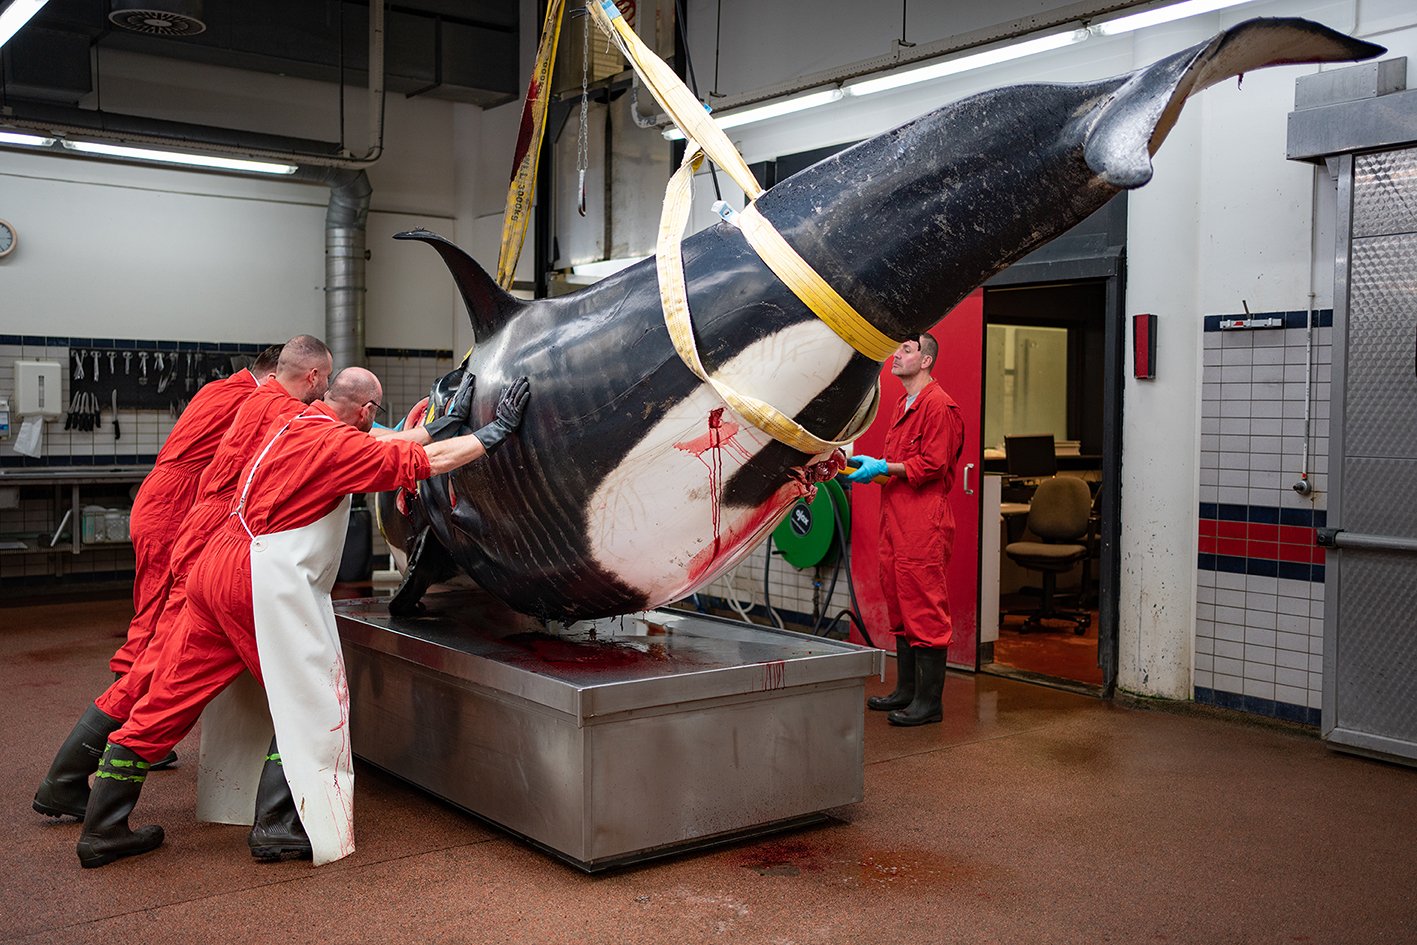 Onderzoekers duwen de ruim 2000 kilo wegende orka in de juiste richting, zodat het dier op de sectietafel kan worden onderzocht.